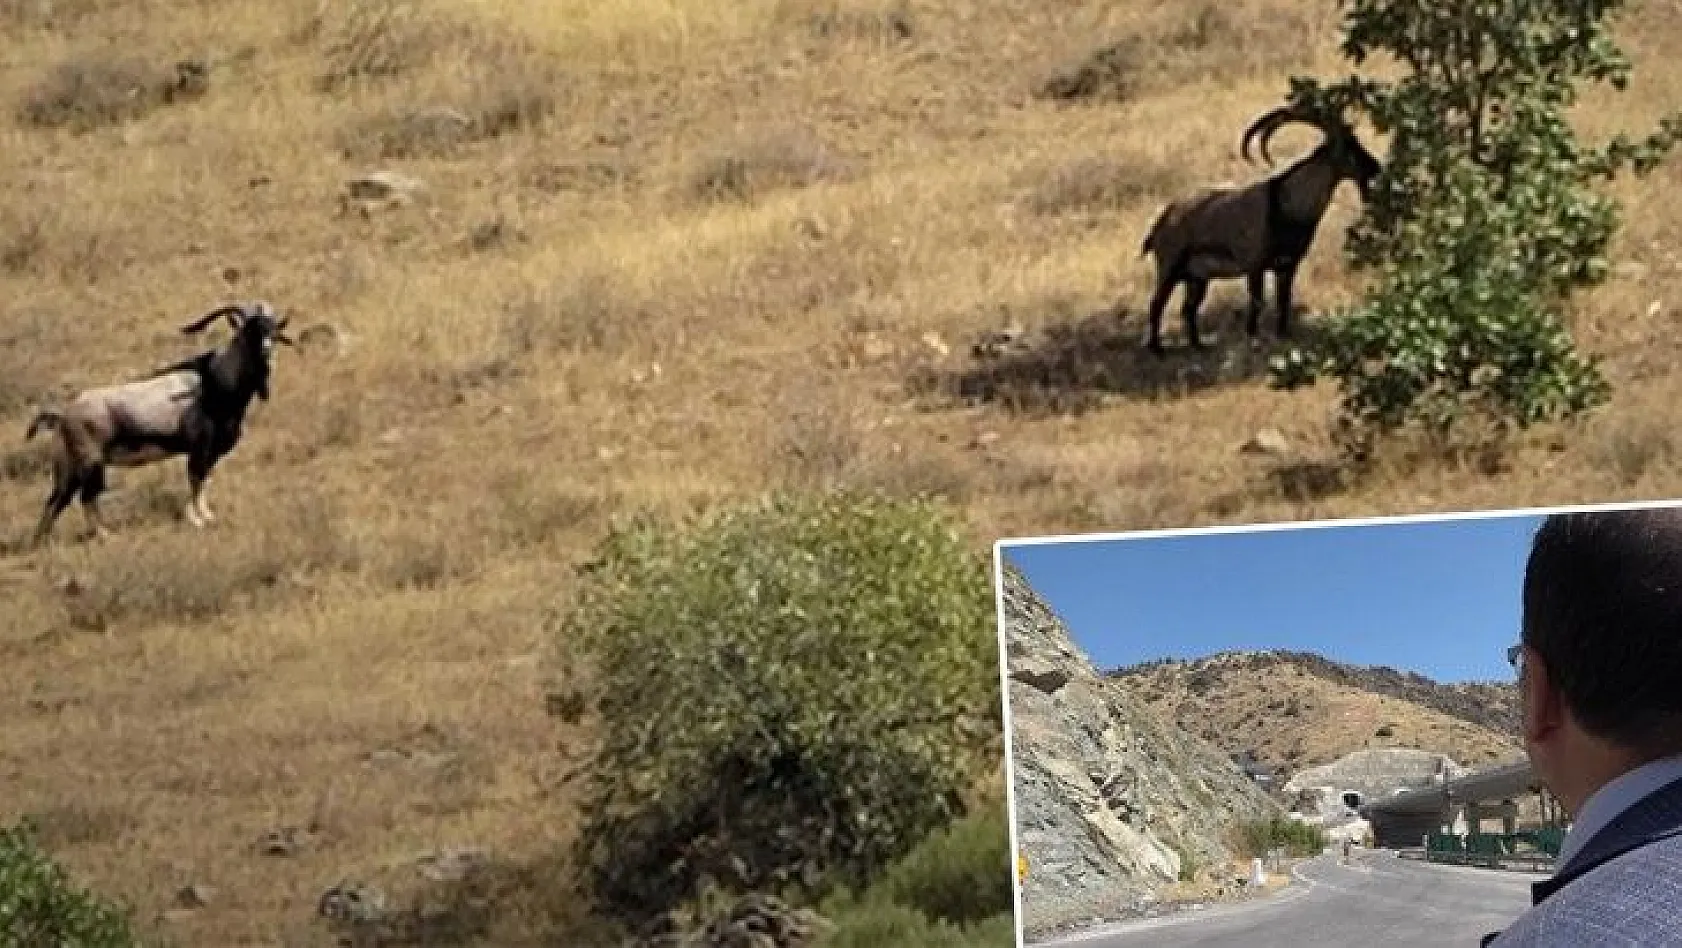 Dağ keçilerini gören sürücüden güldüren seslenme